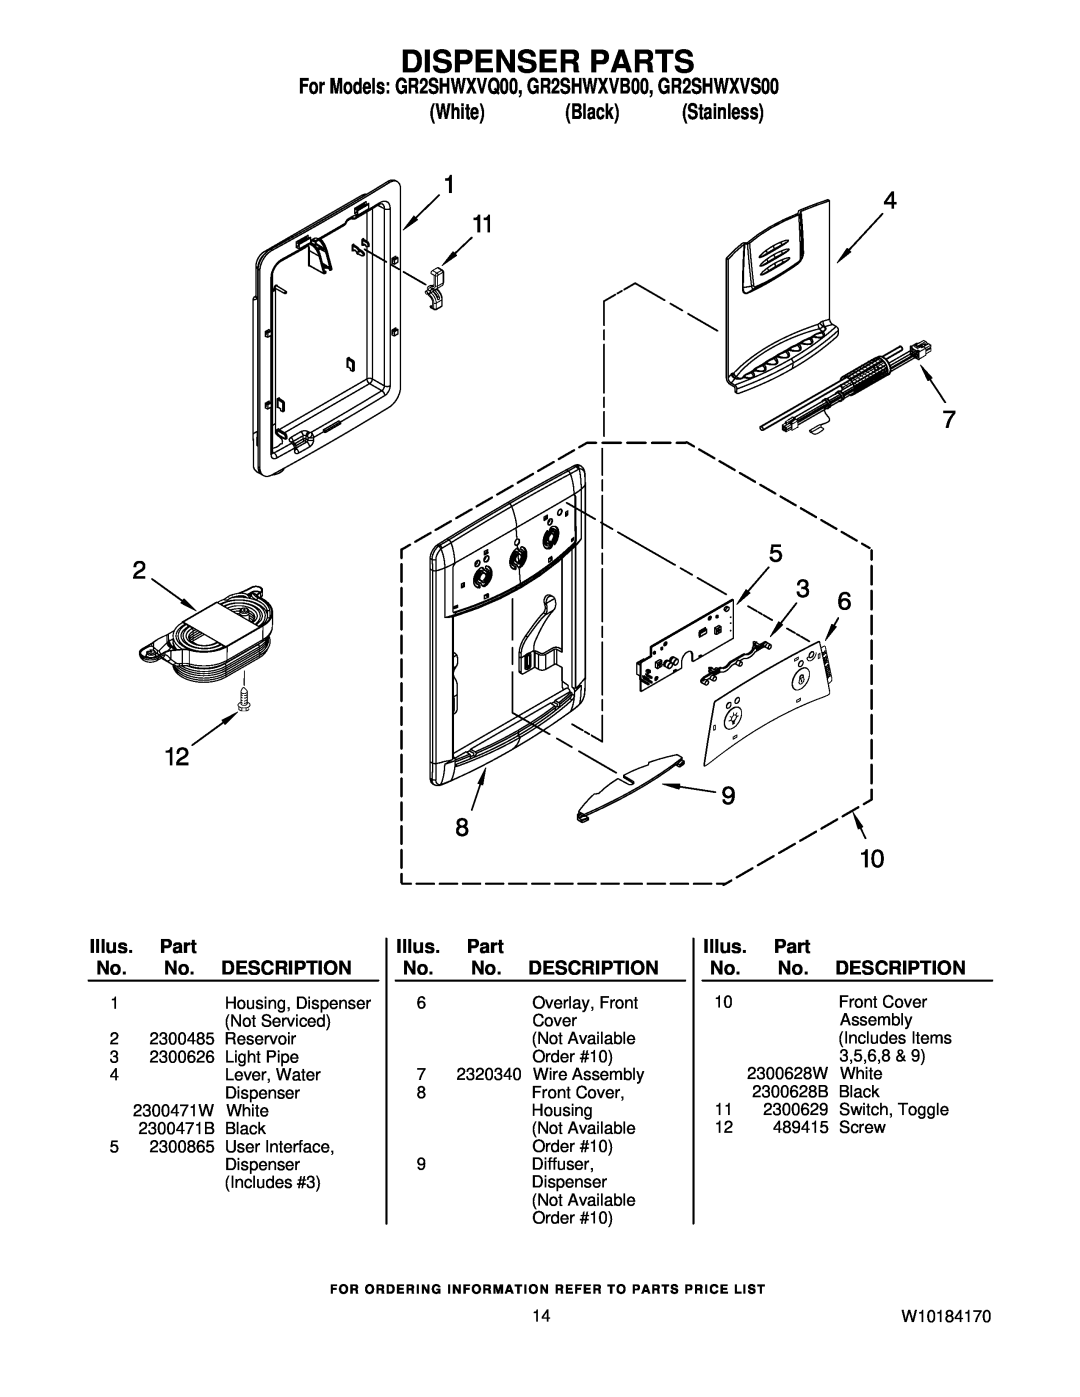 Whirlpool manual Dispenser Parts, For Models GR2SHWXVQ00, GR2SHWXVB00, GR2SHWXVS00, White Black Stainless 